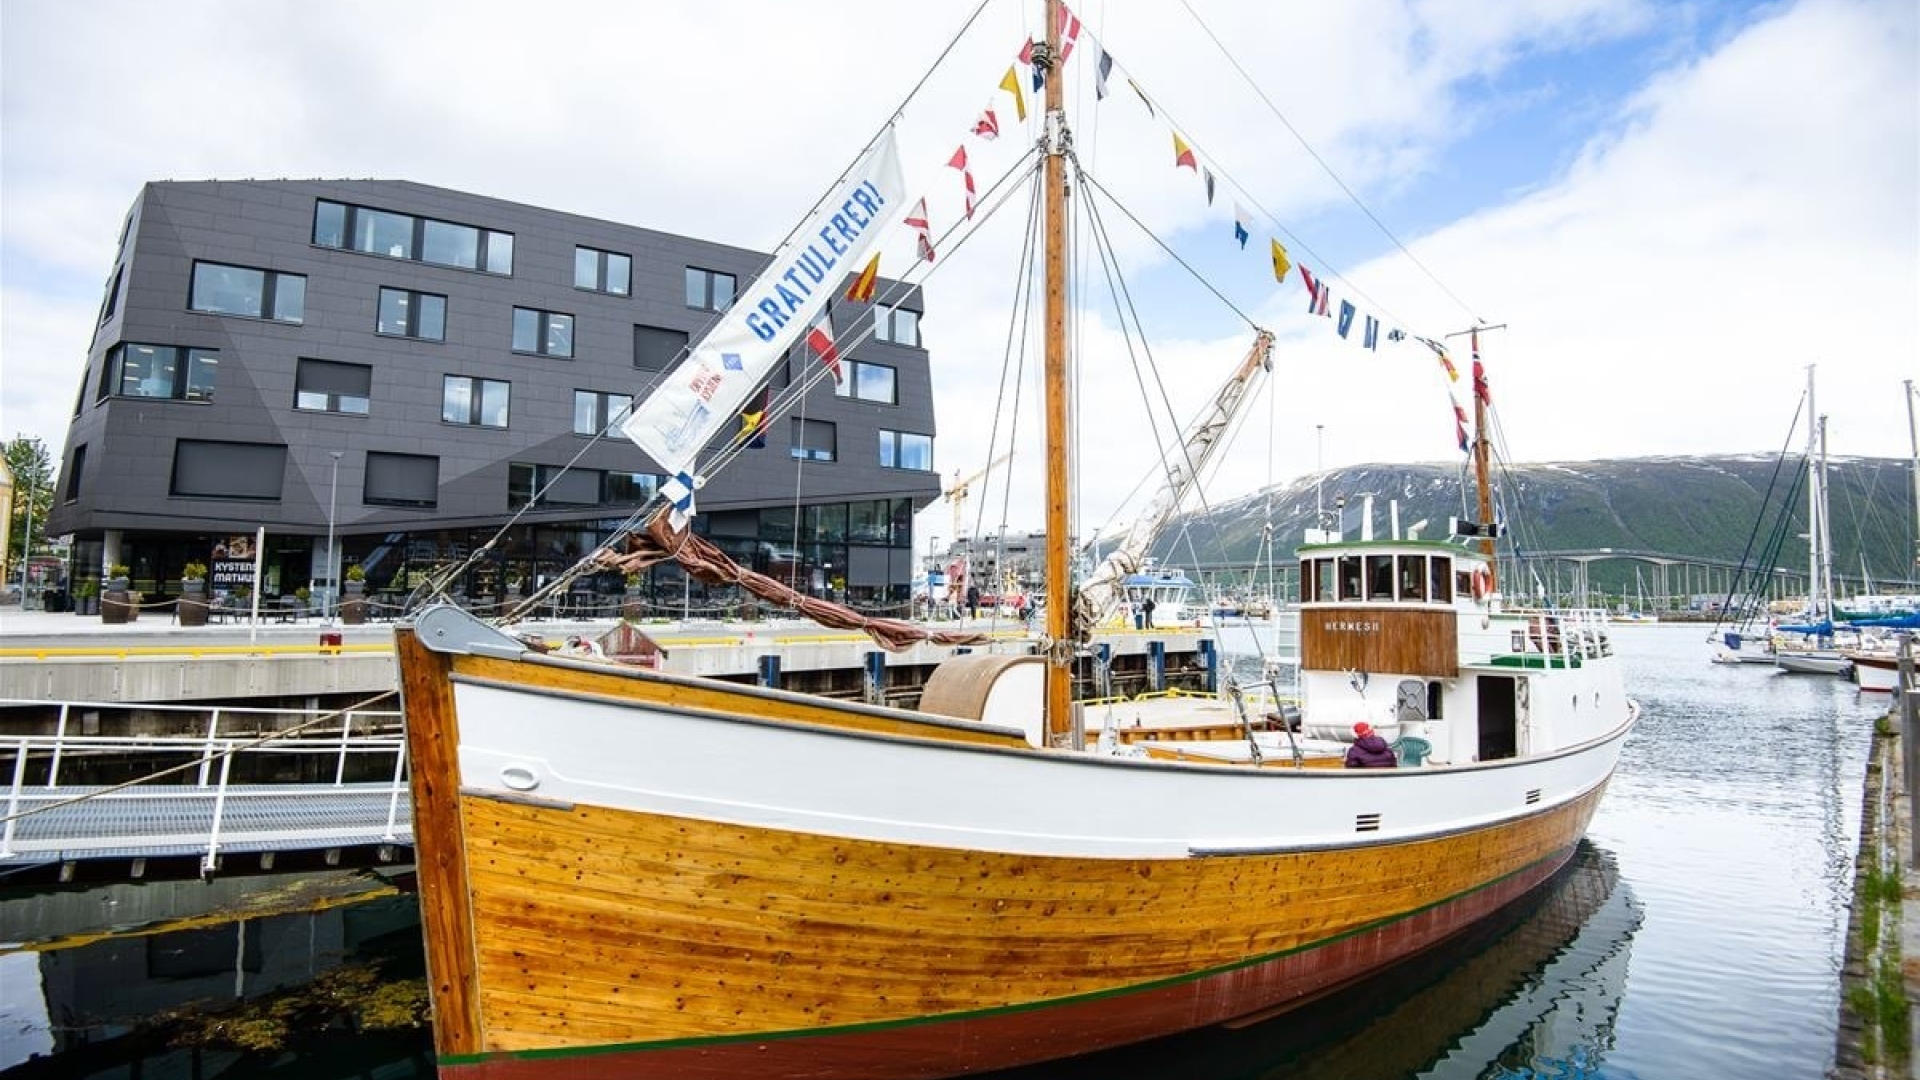 The boat Hermes II in Tromsø Northern Norway